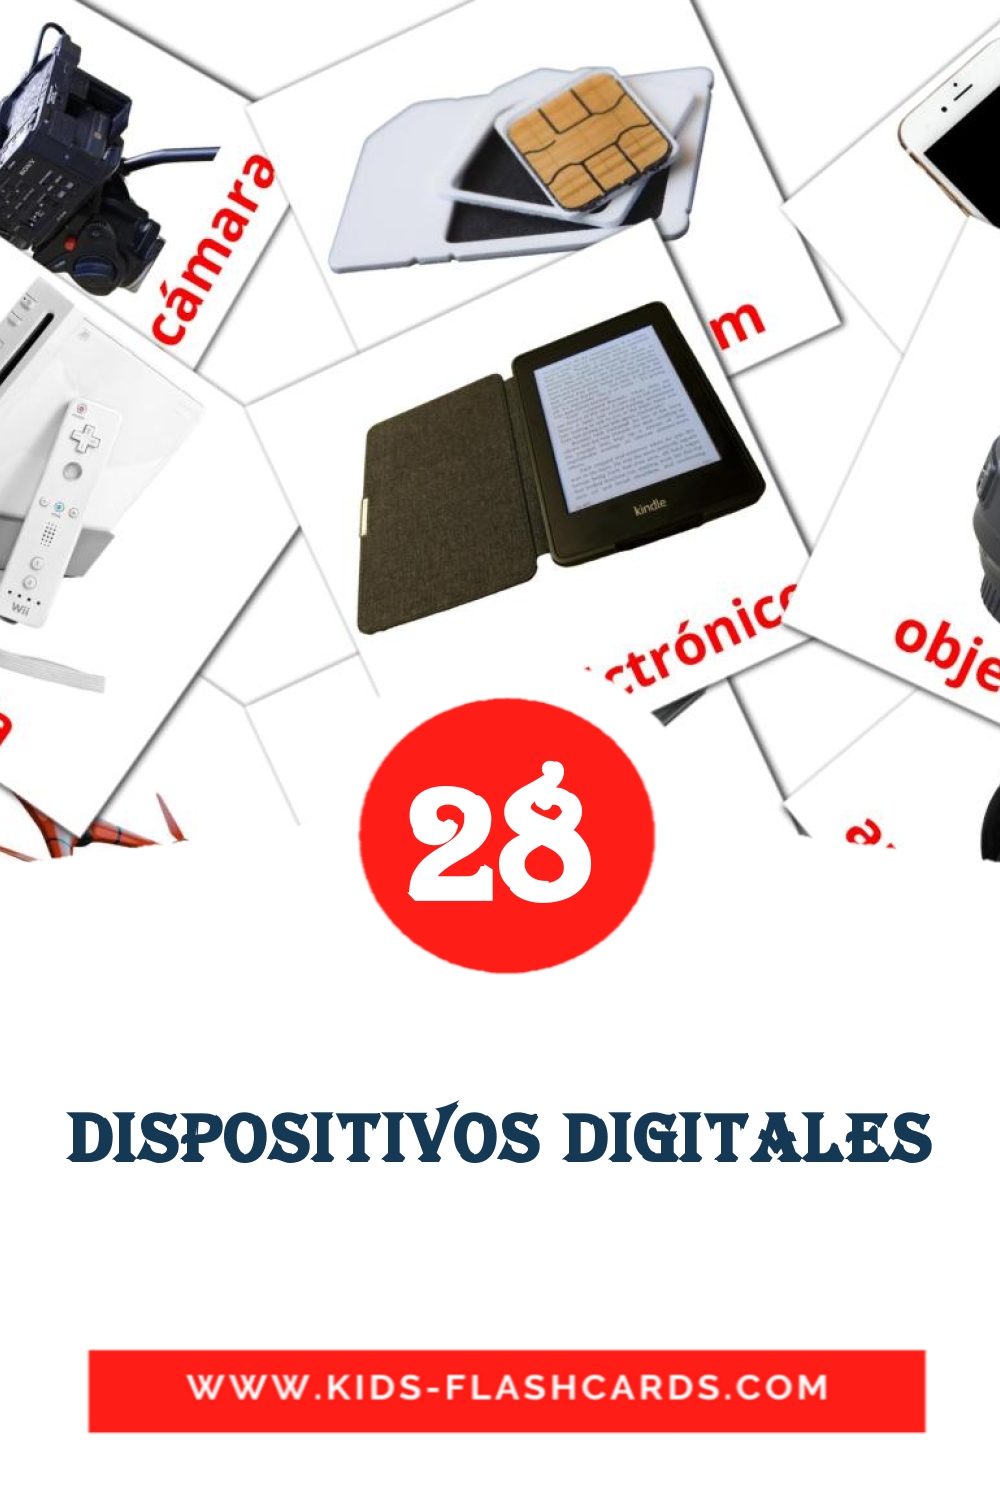 29 tarjetas didacticas de Dispositivos digitales para el jardín de infancia en español